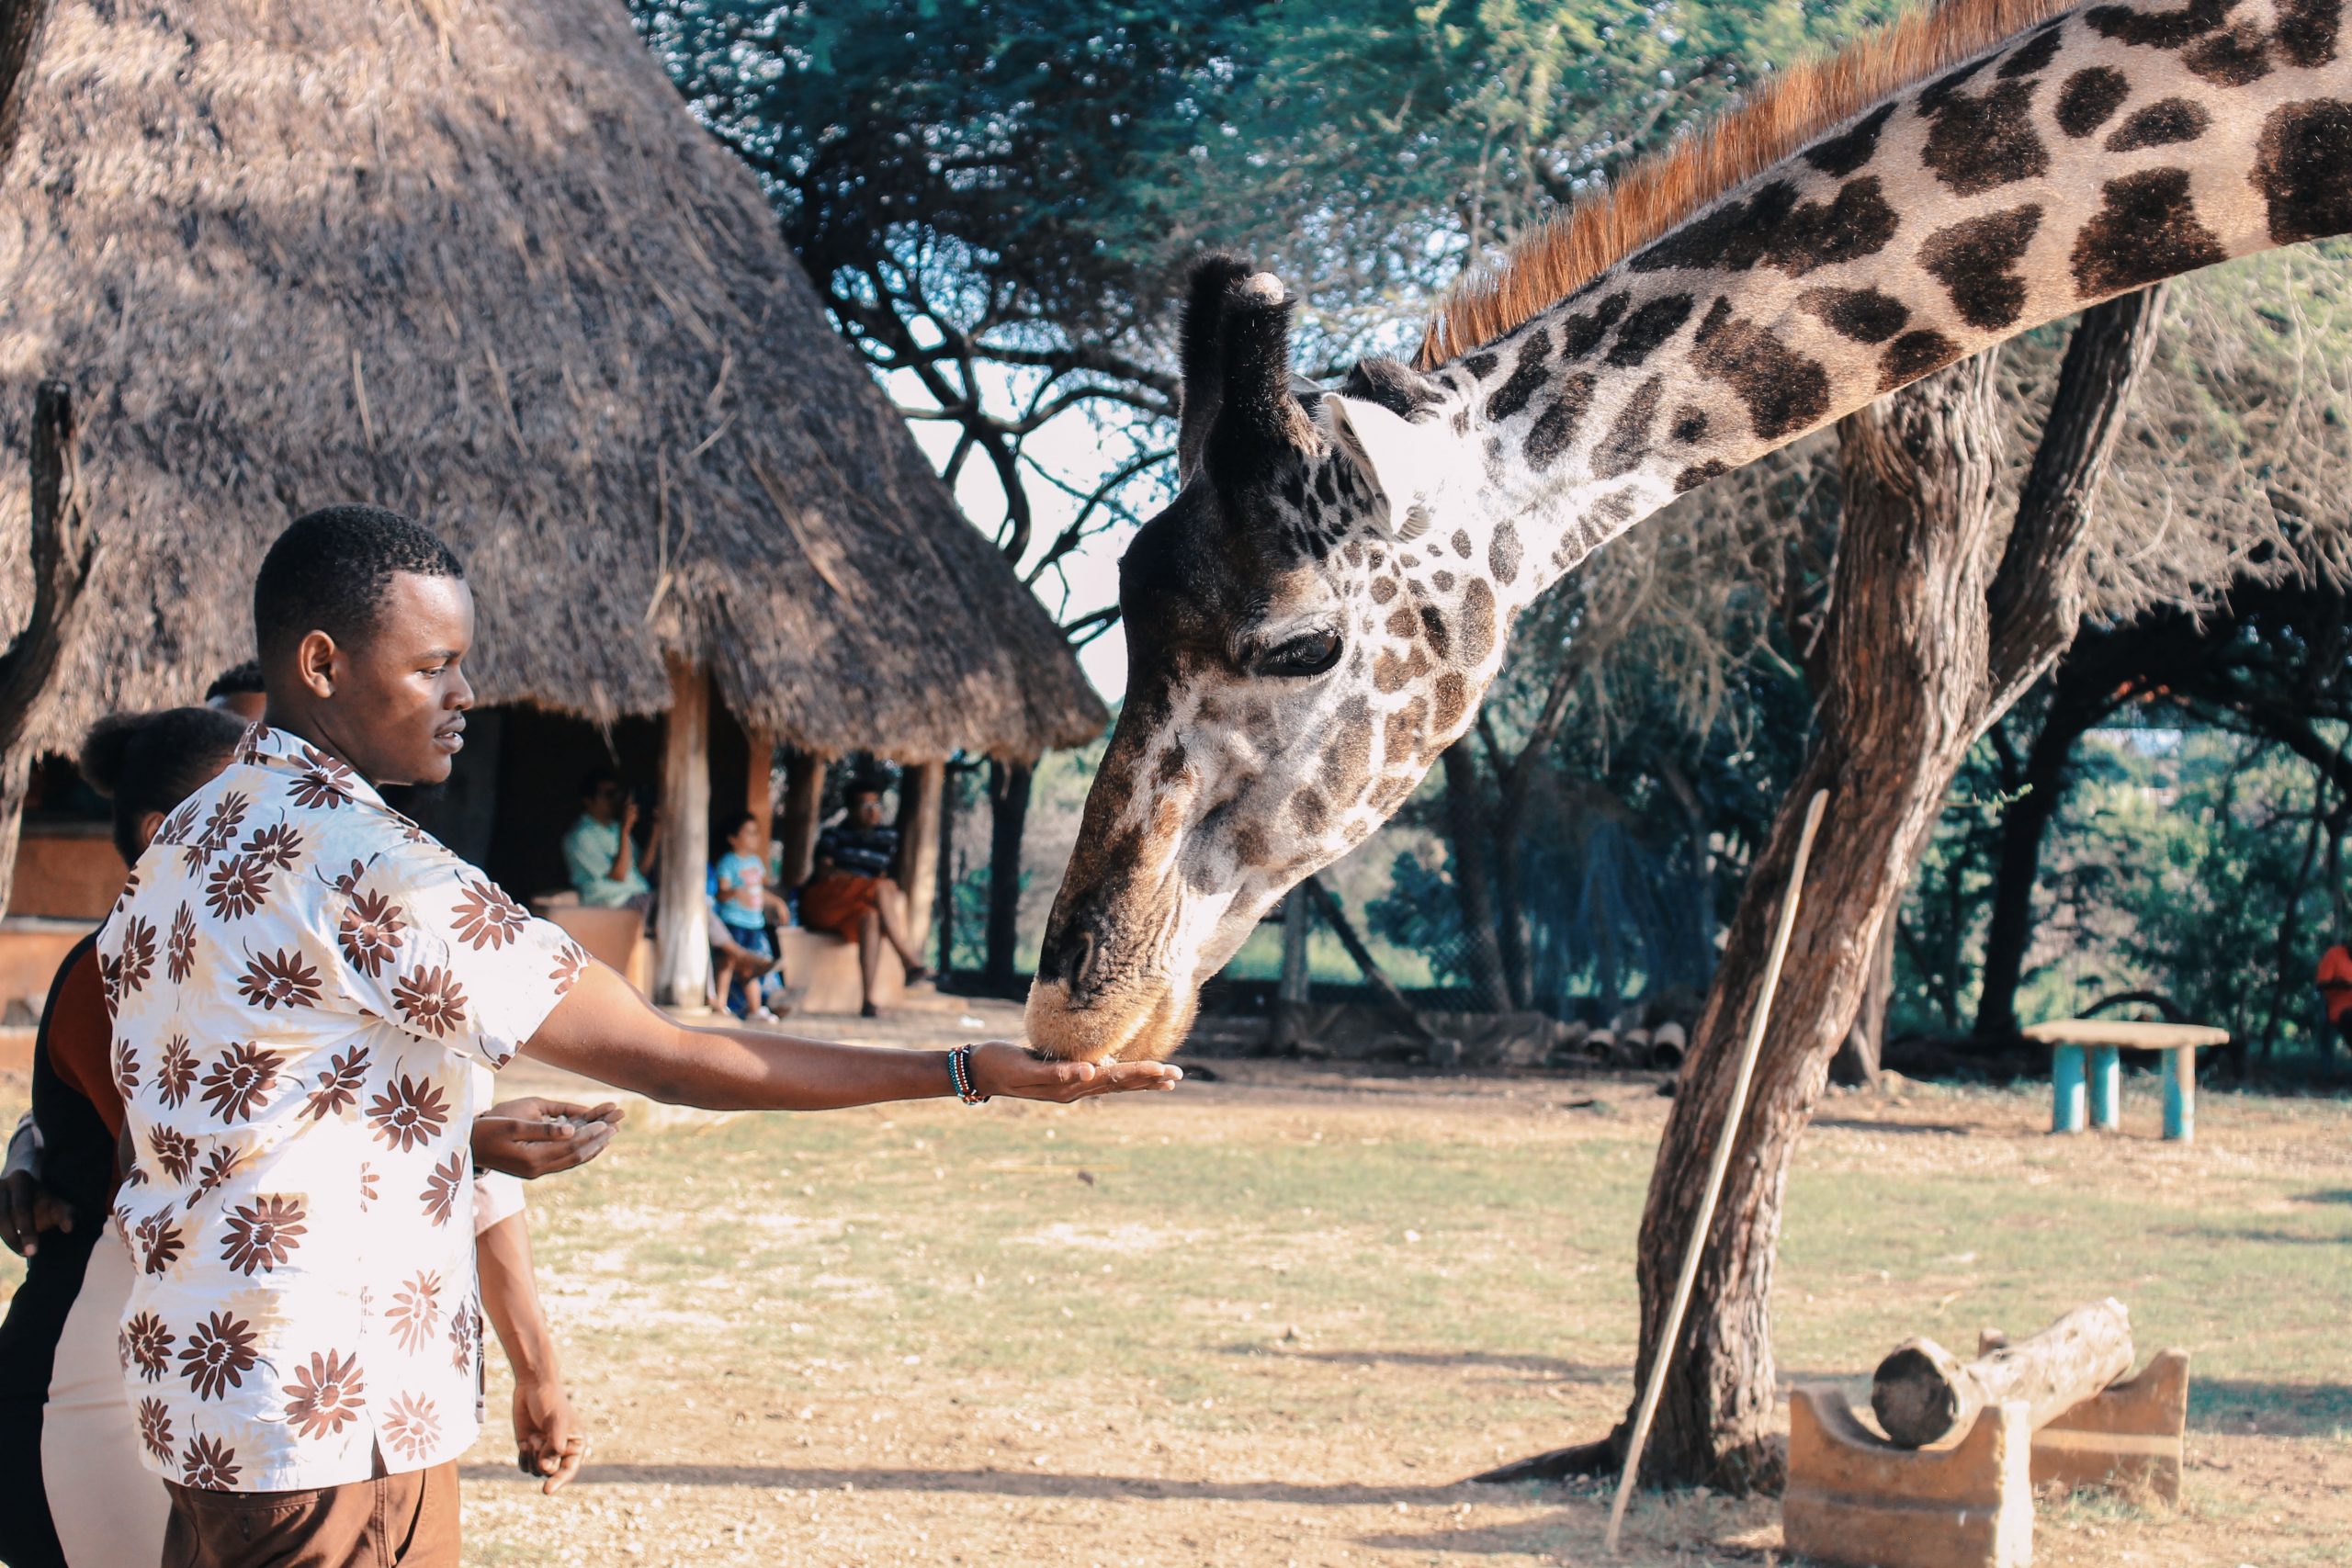 A tourist feeding a giraffe from his hand.